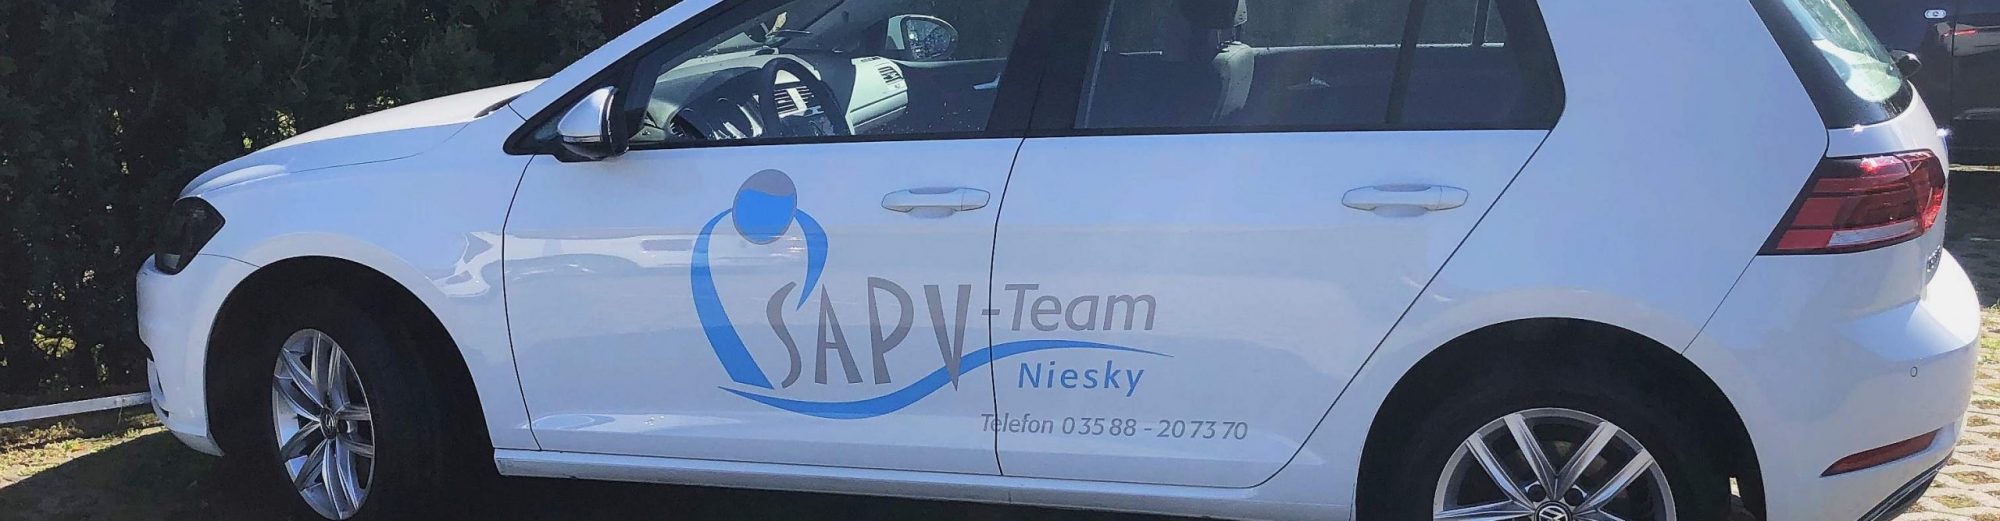 SAPV-Team Niesky